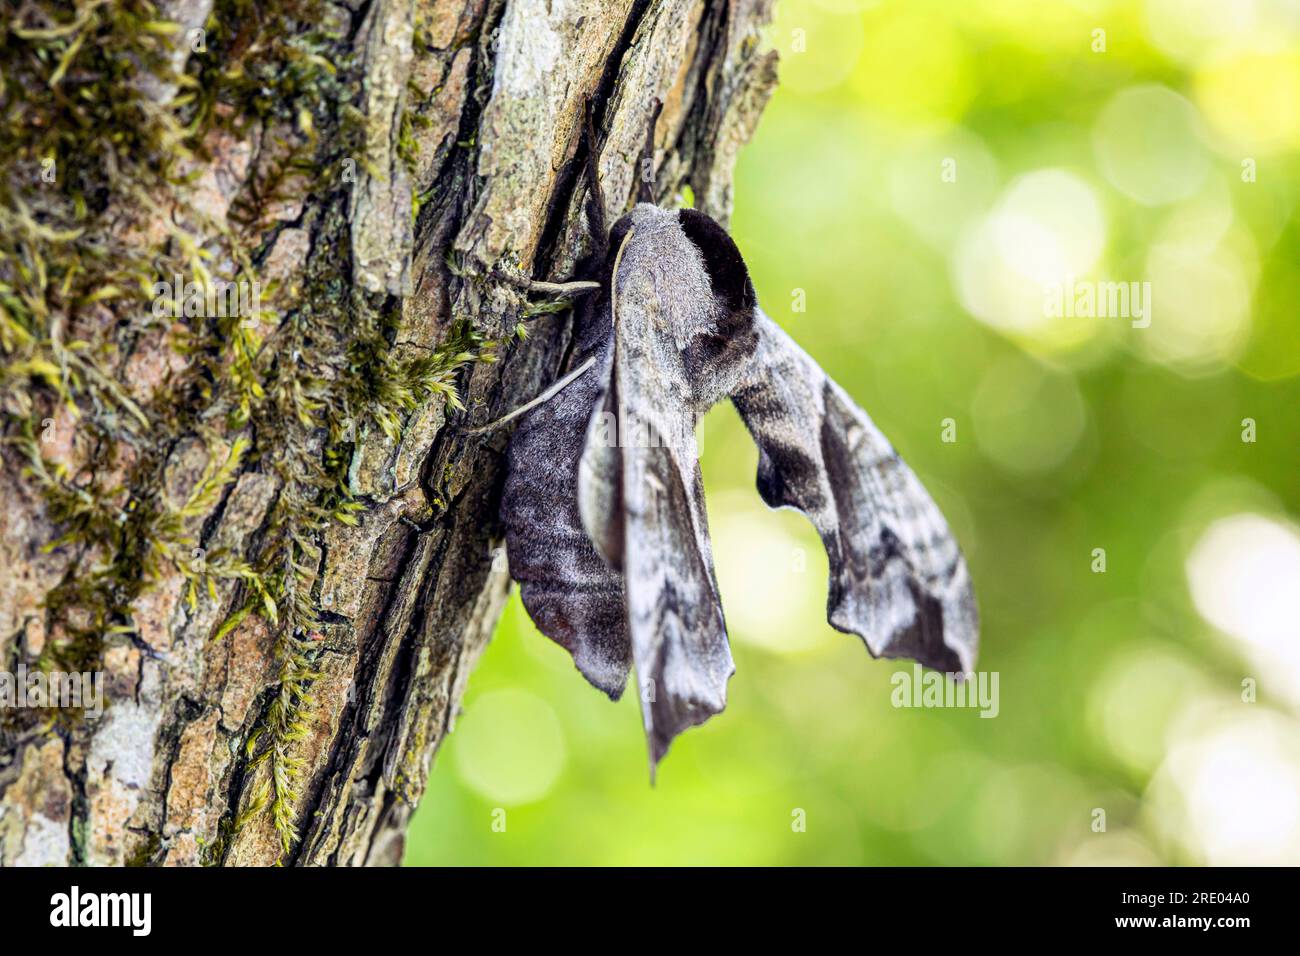 Eyed Hawk-Moth, Eyed Hawkmoth, Hawkmoths Hawk-moths (Smerinthus ocellata, Smerinthus ocellatus), sitting at a tree trunk, Germany, Bavaria Stock Photo